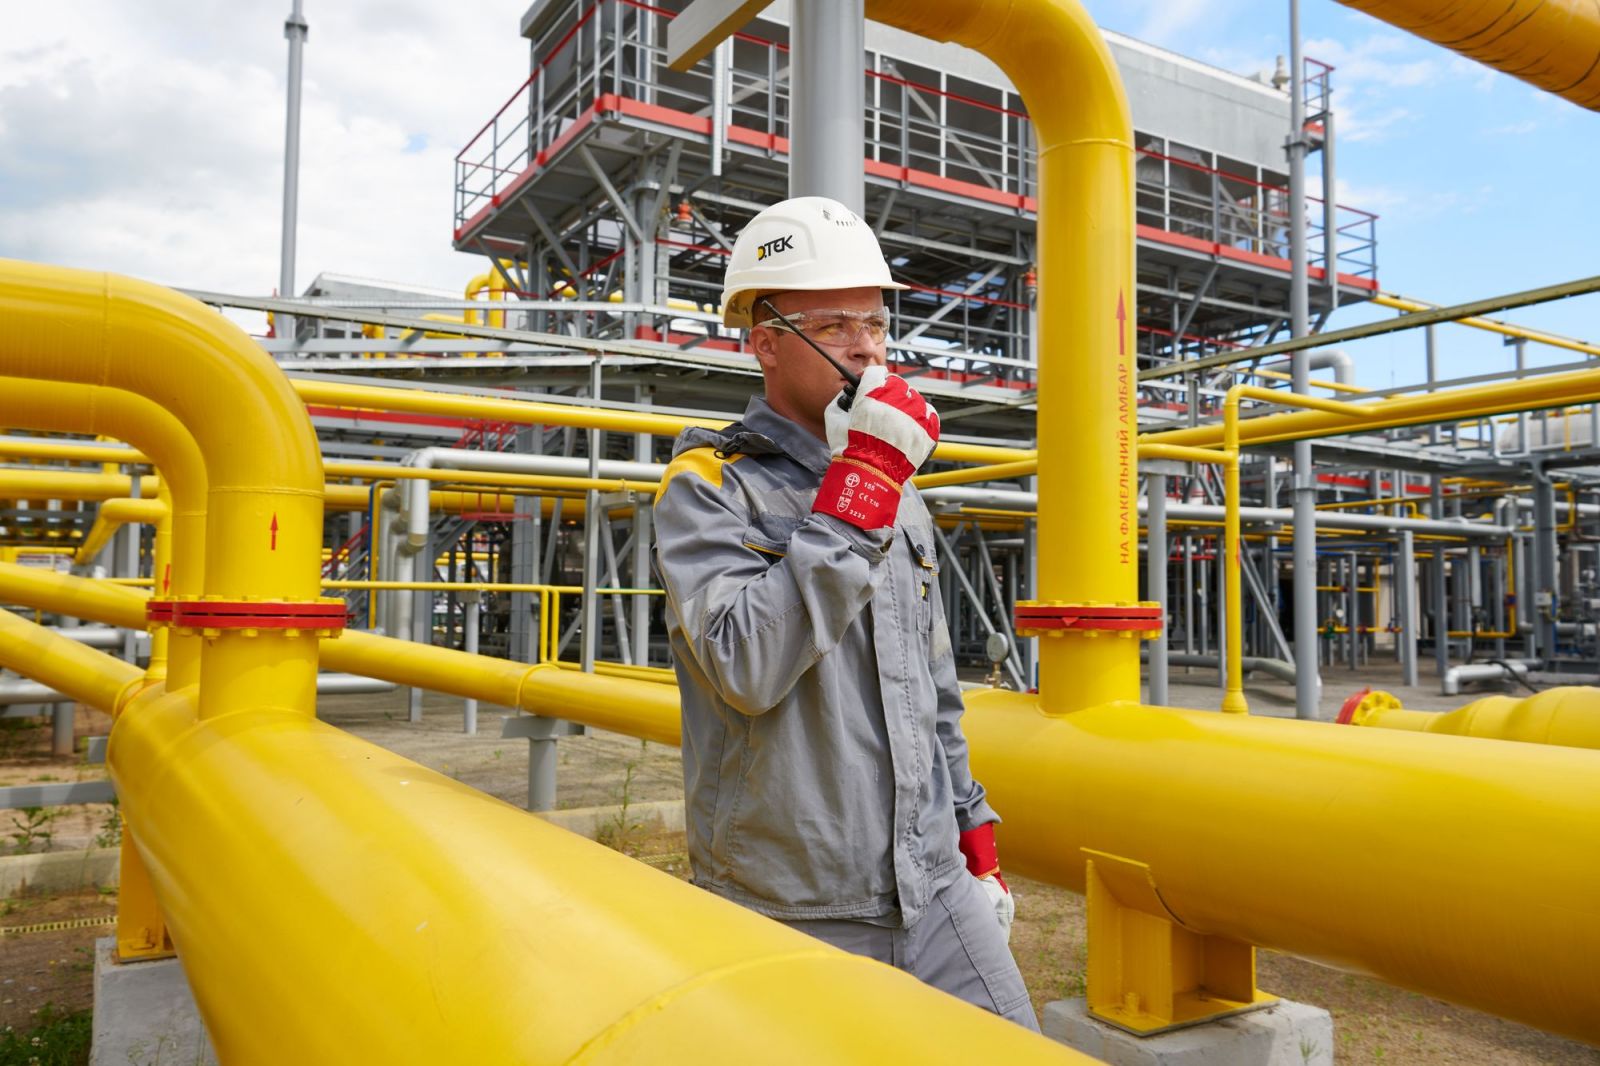 ДТЭК Нефтегаз добыл 1,66 млрд кубометров газа в 2019 году